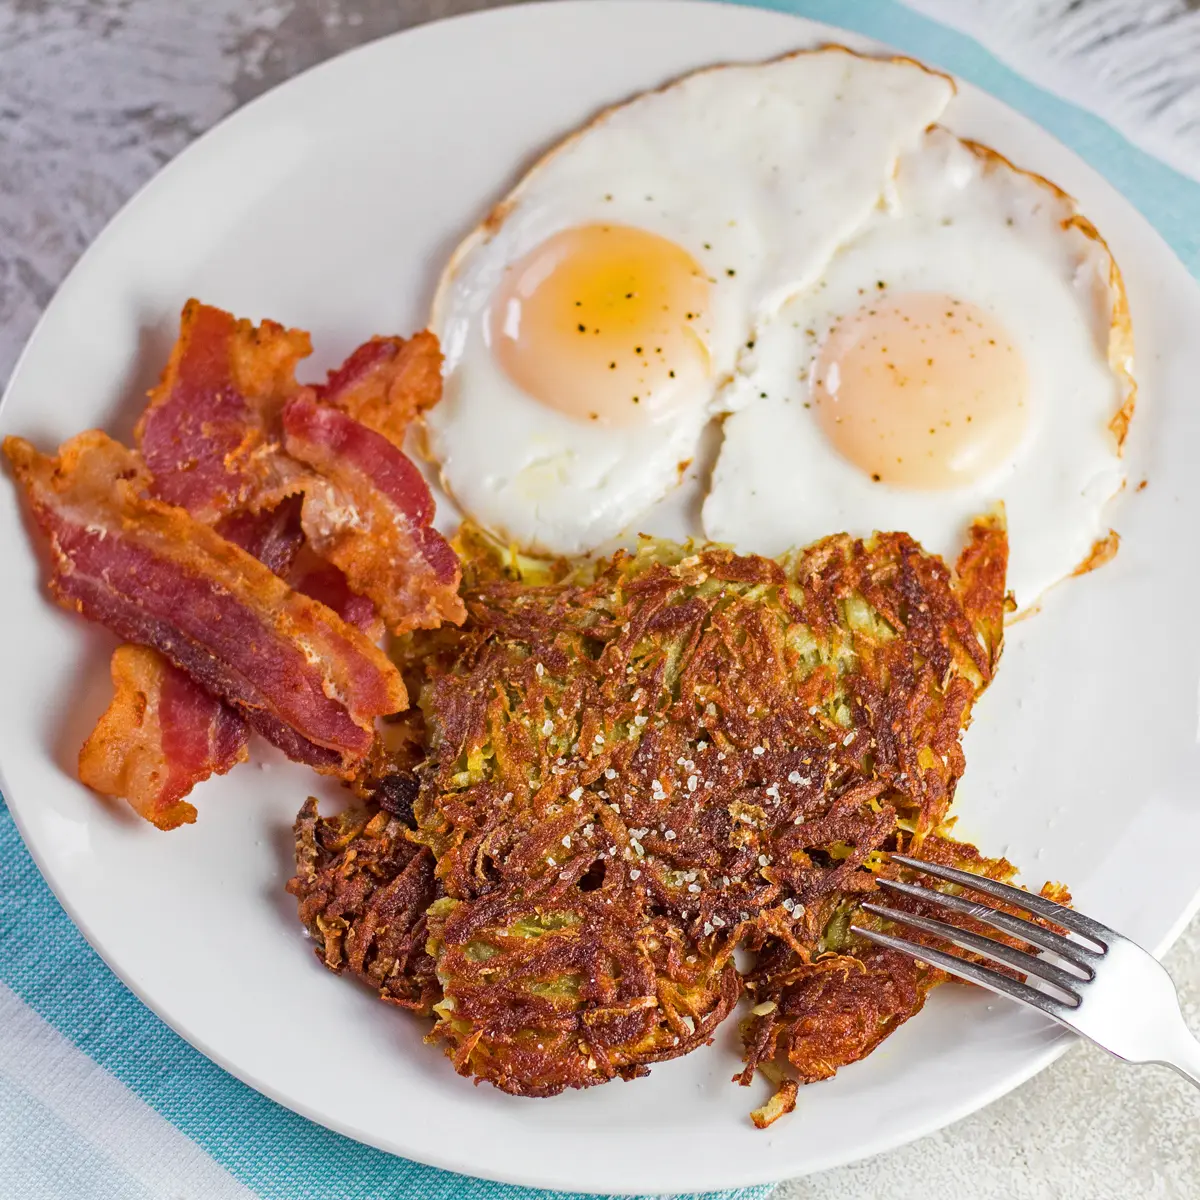 Grande quadrado em ângulo sobre as batatas fritas caseiras banhadas em um café da manhã com 2 ovos.